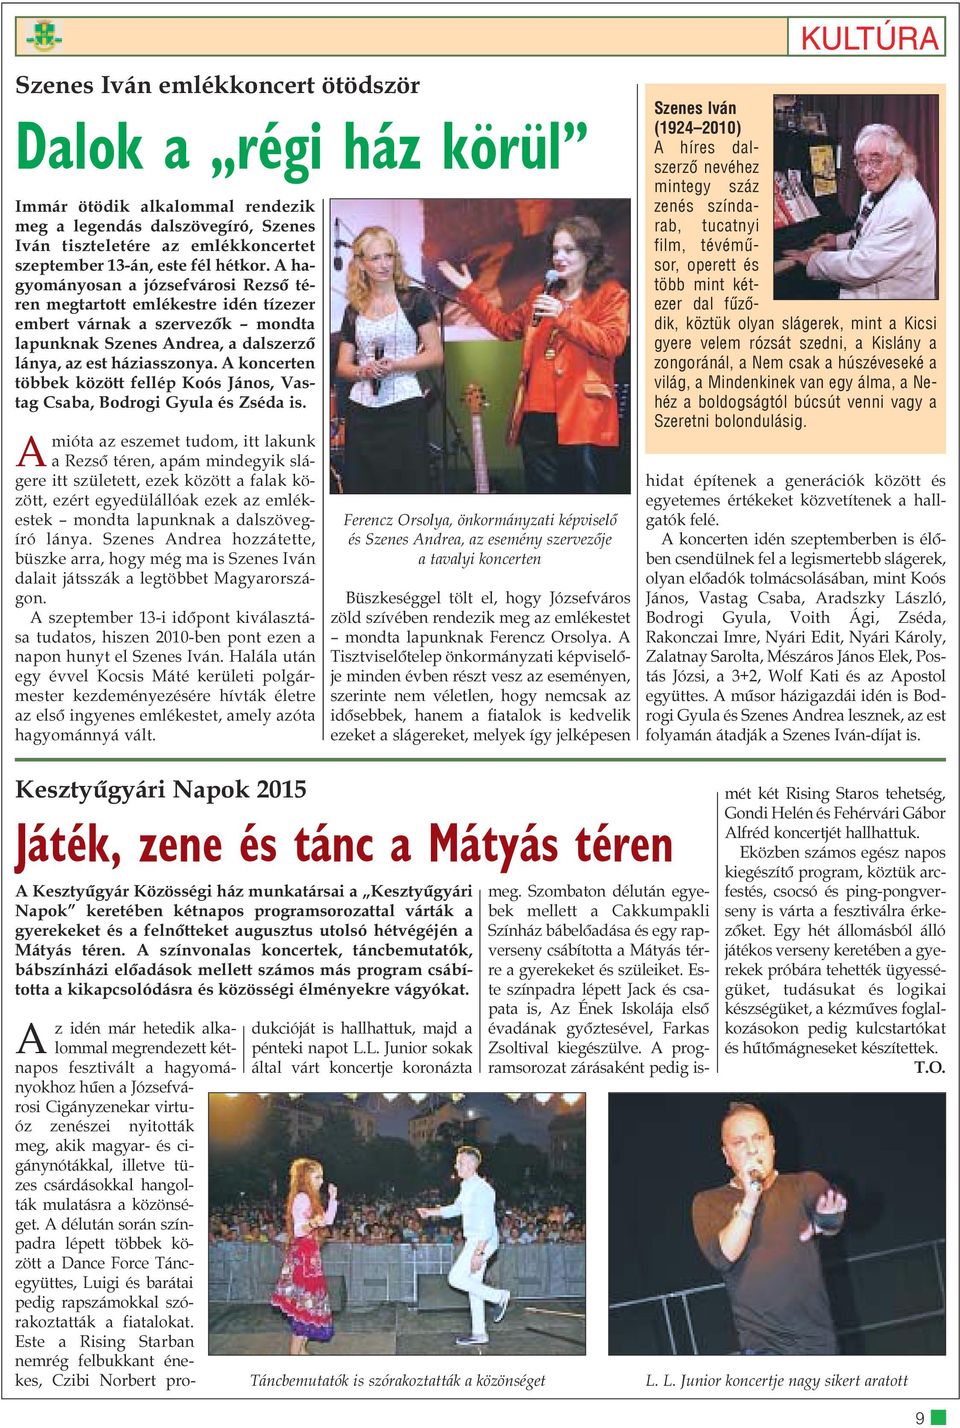 A koncerten többek között fellép Koós János, Vastag Csaba, Bodrogi Gyula és Zséda is.